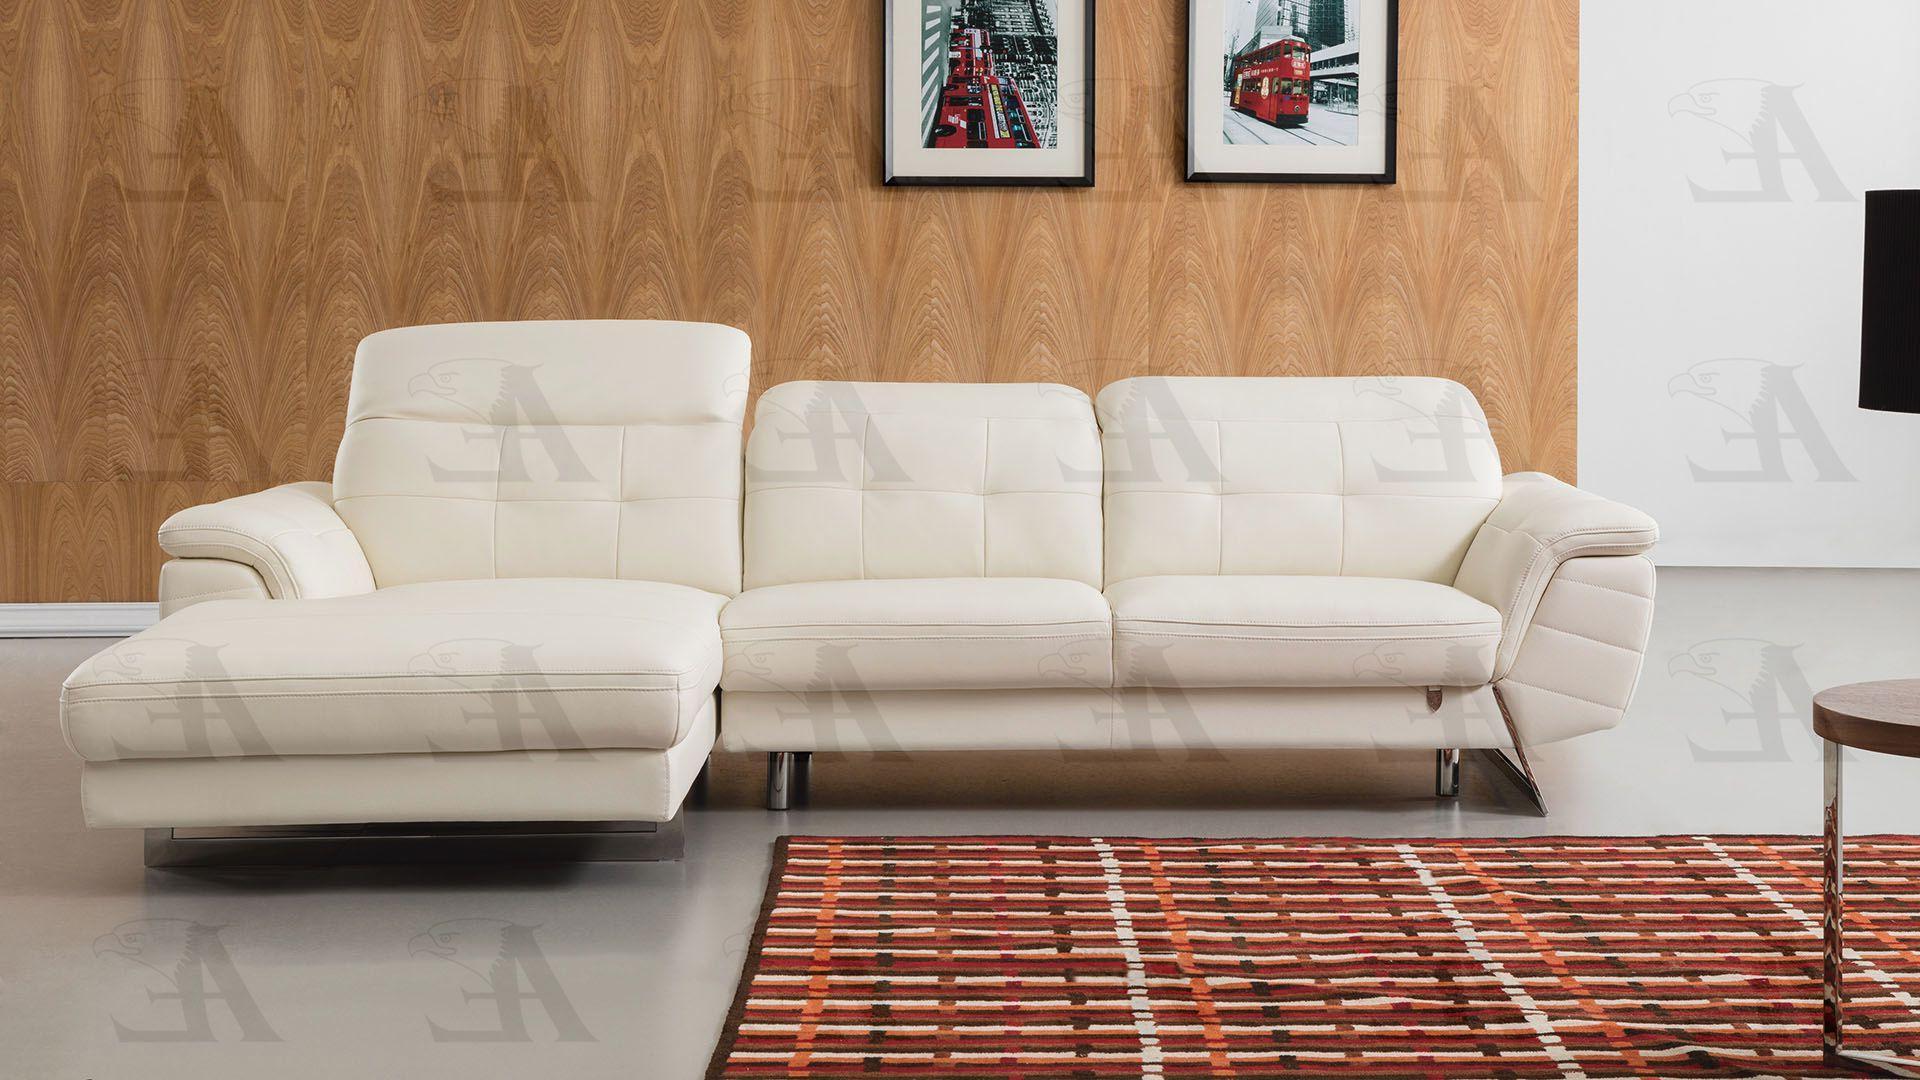 

        
American Eagle Furniture EK-L085-W Sectional Sofa White Italian Leather 00656237667679
